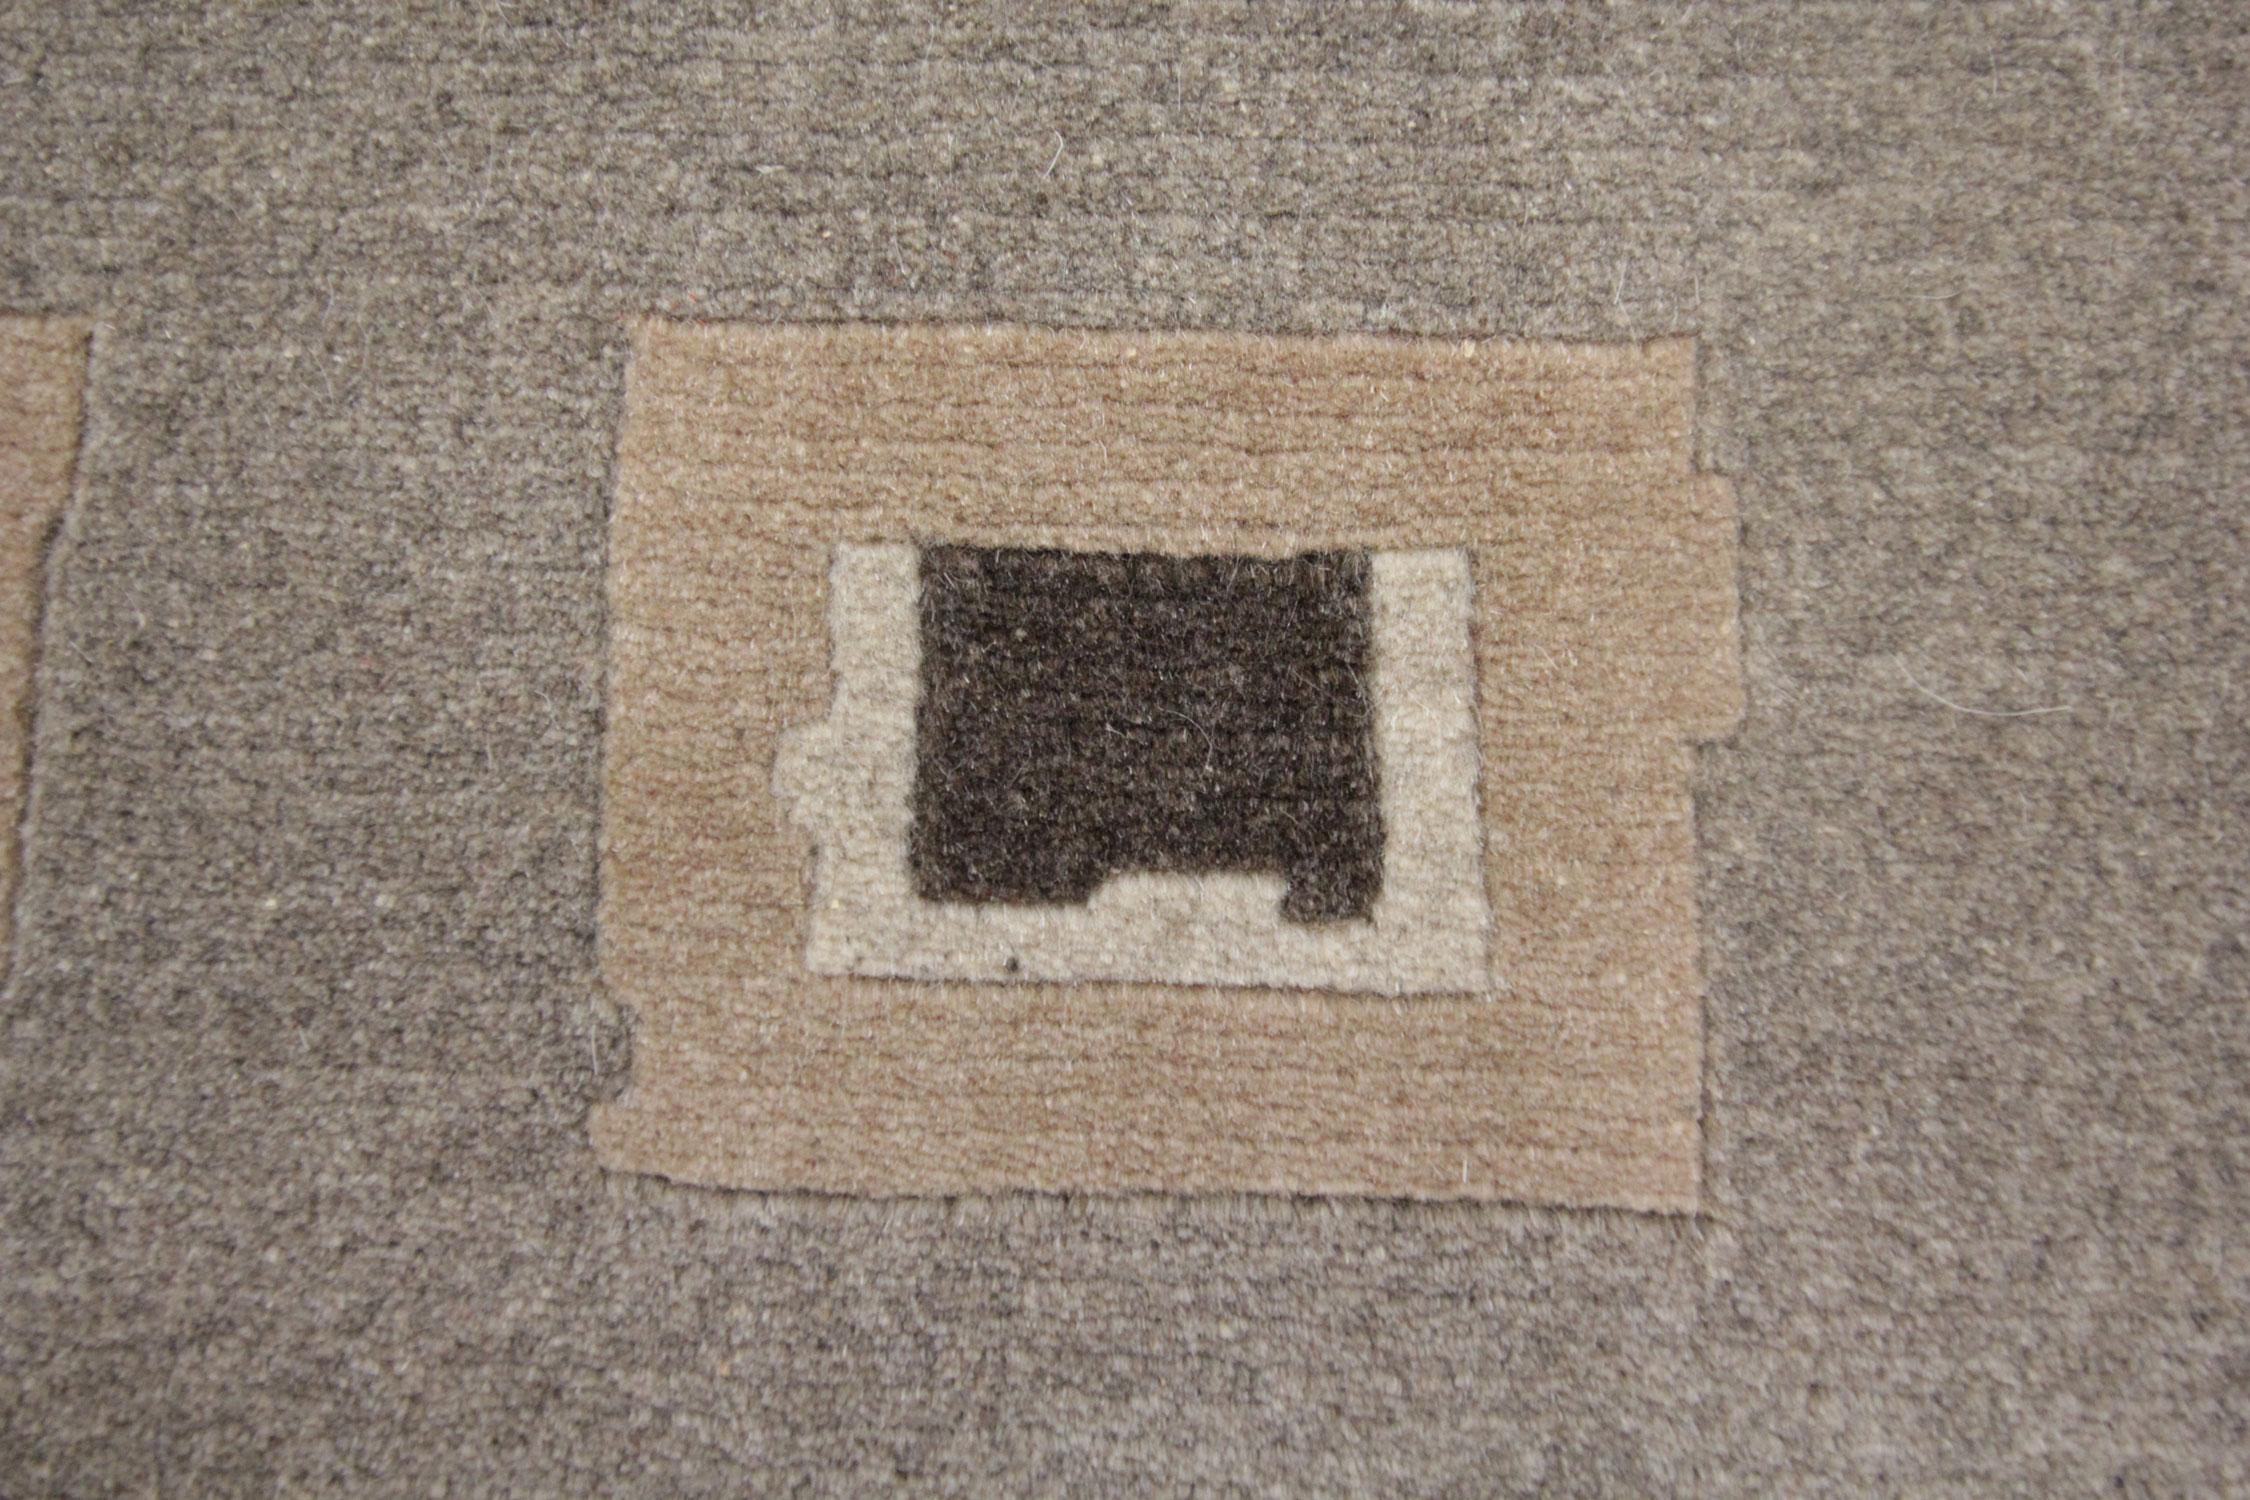 handmade wool rugs